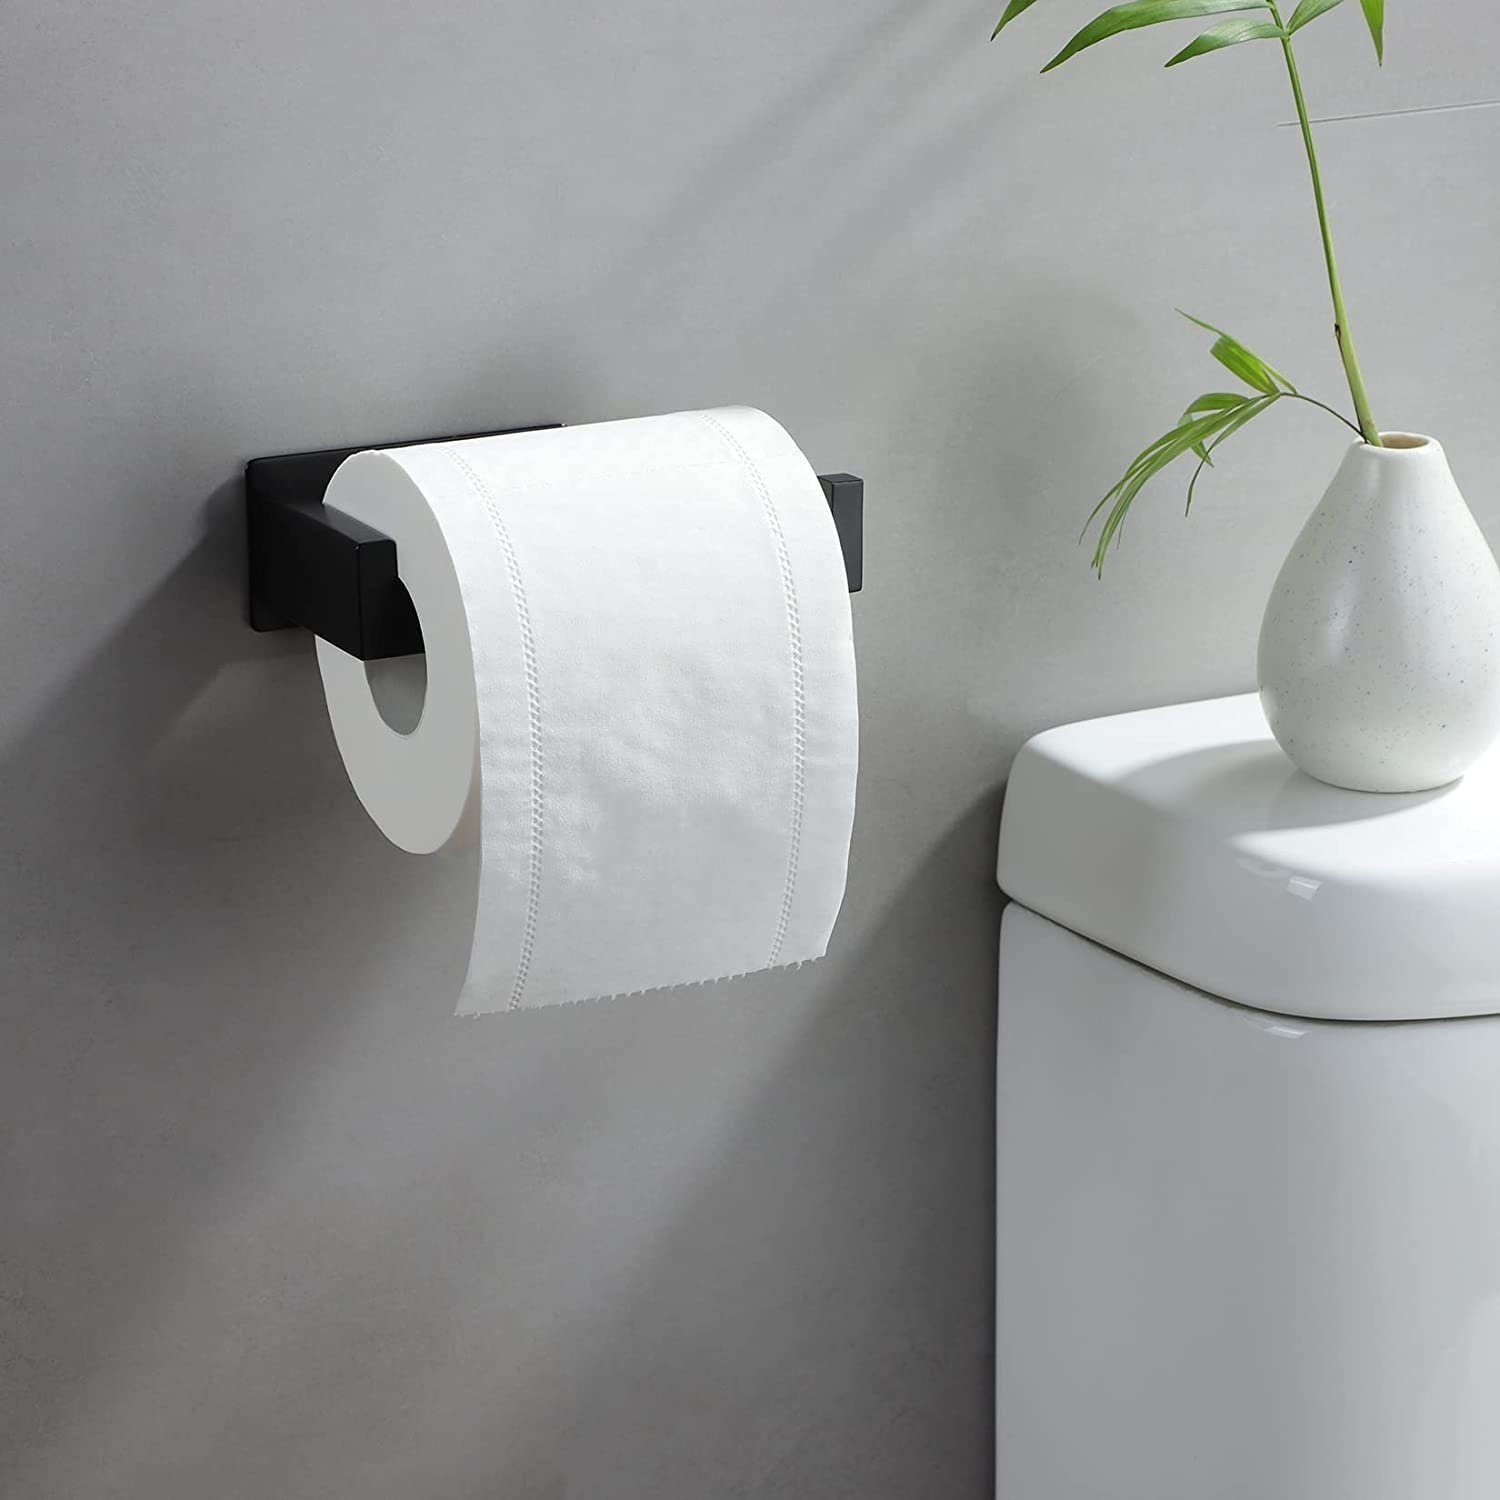 Haiaveng Toilettenpapierhalter Toilettenpapierhalter, kein erforderlich, Kein Bohren schwarz, Bohren